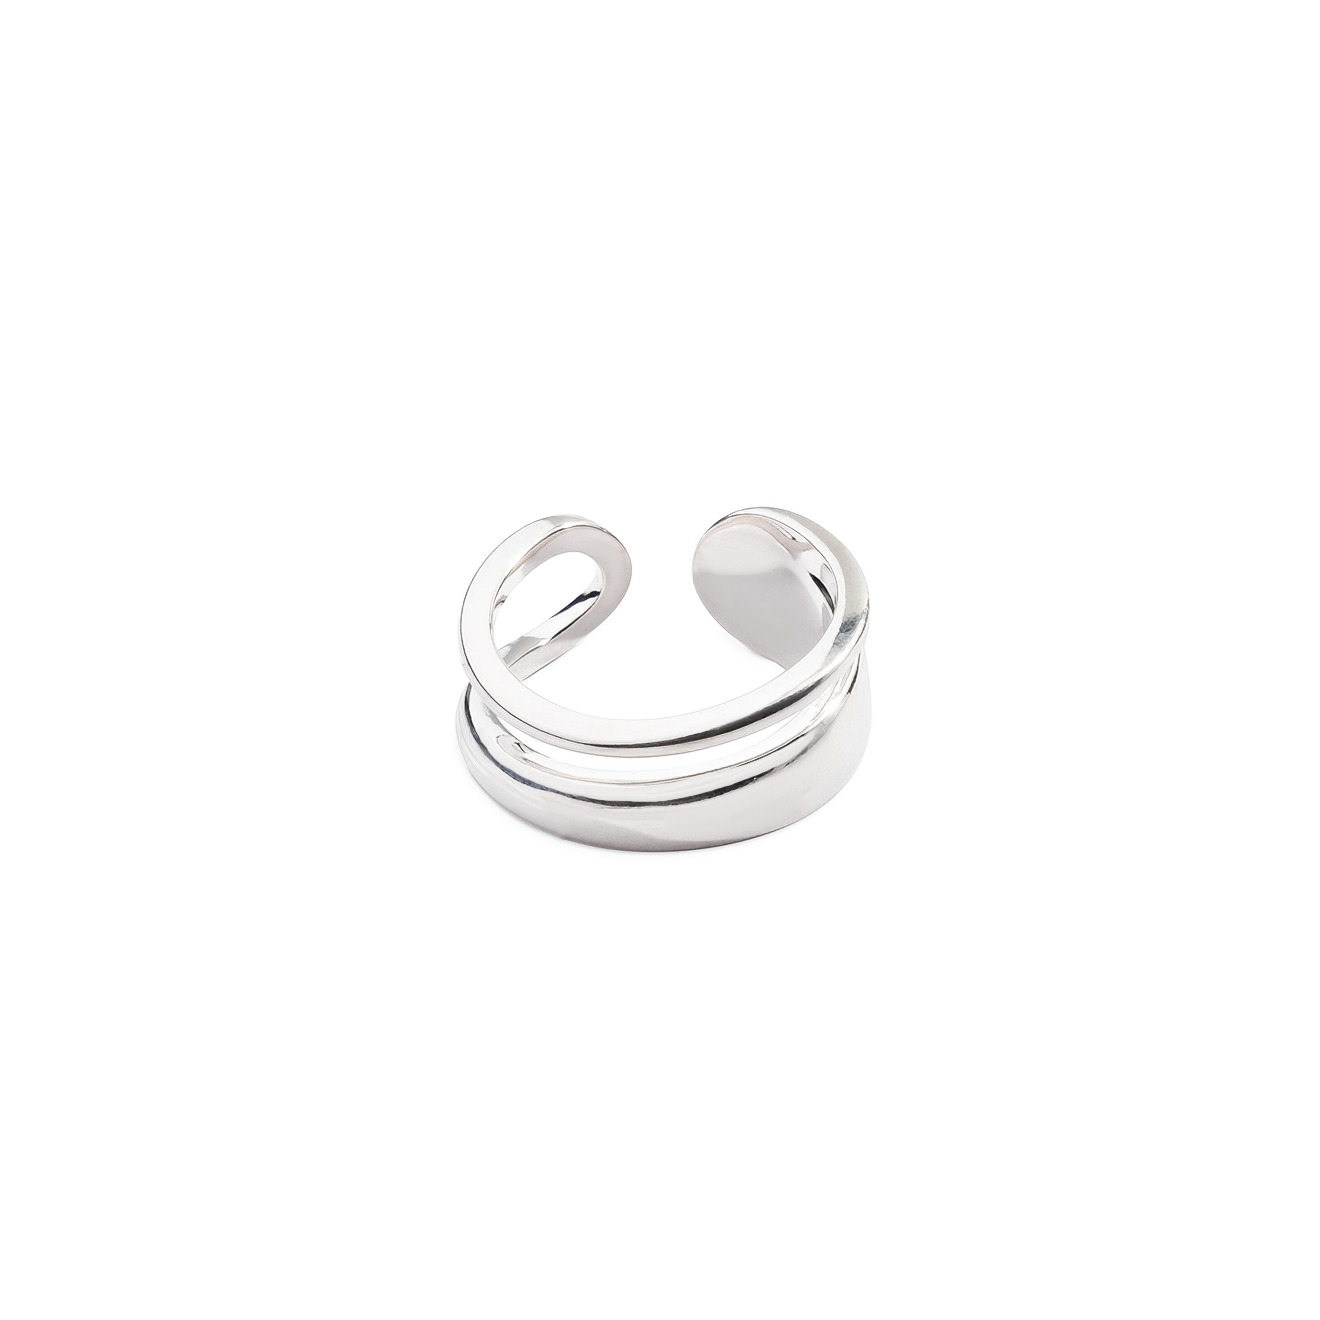 Philippe Audibert Незамкнутое двойное кольцо, покрытое серебром philippe audibert колье цепь franky с разными звеньями покрытое серебром